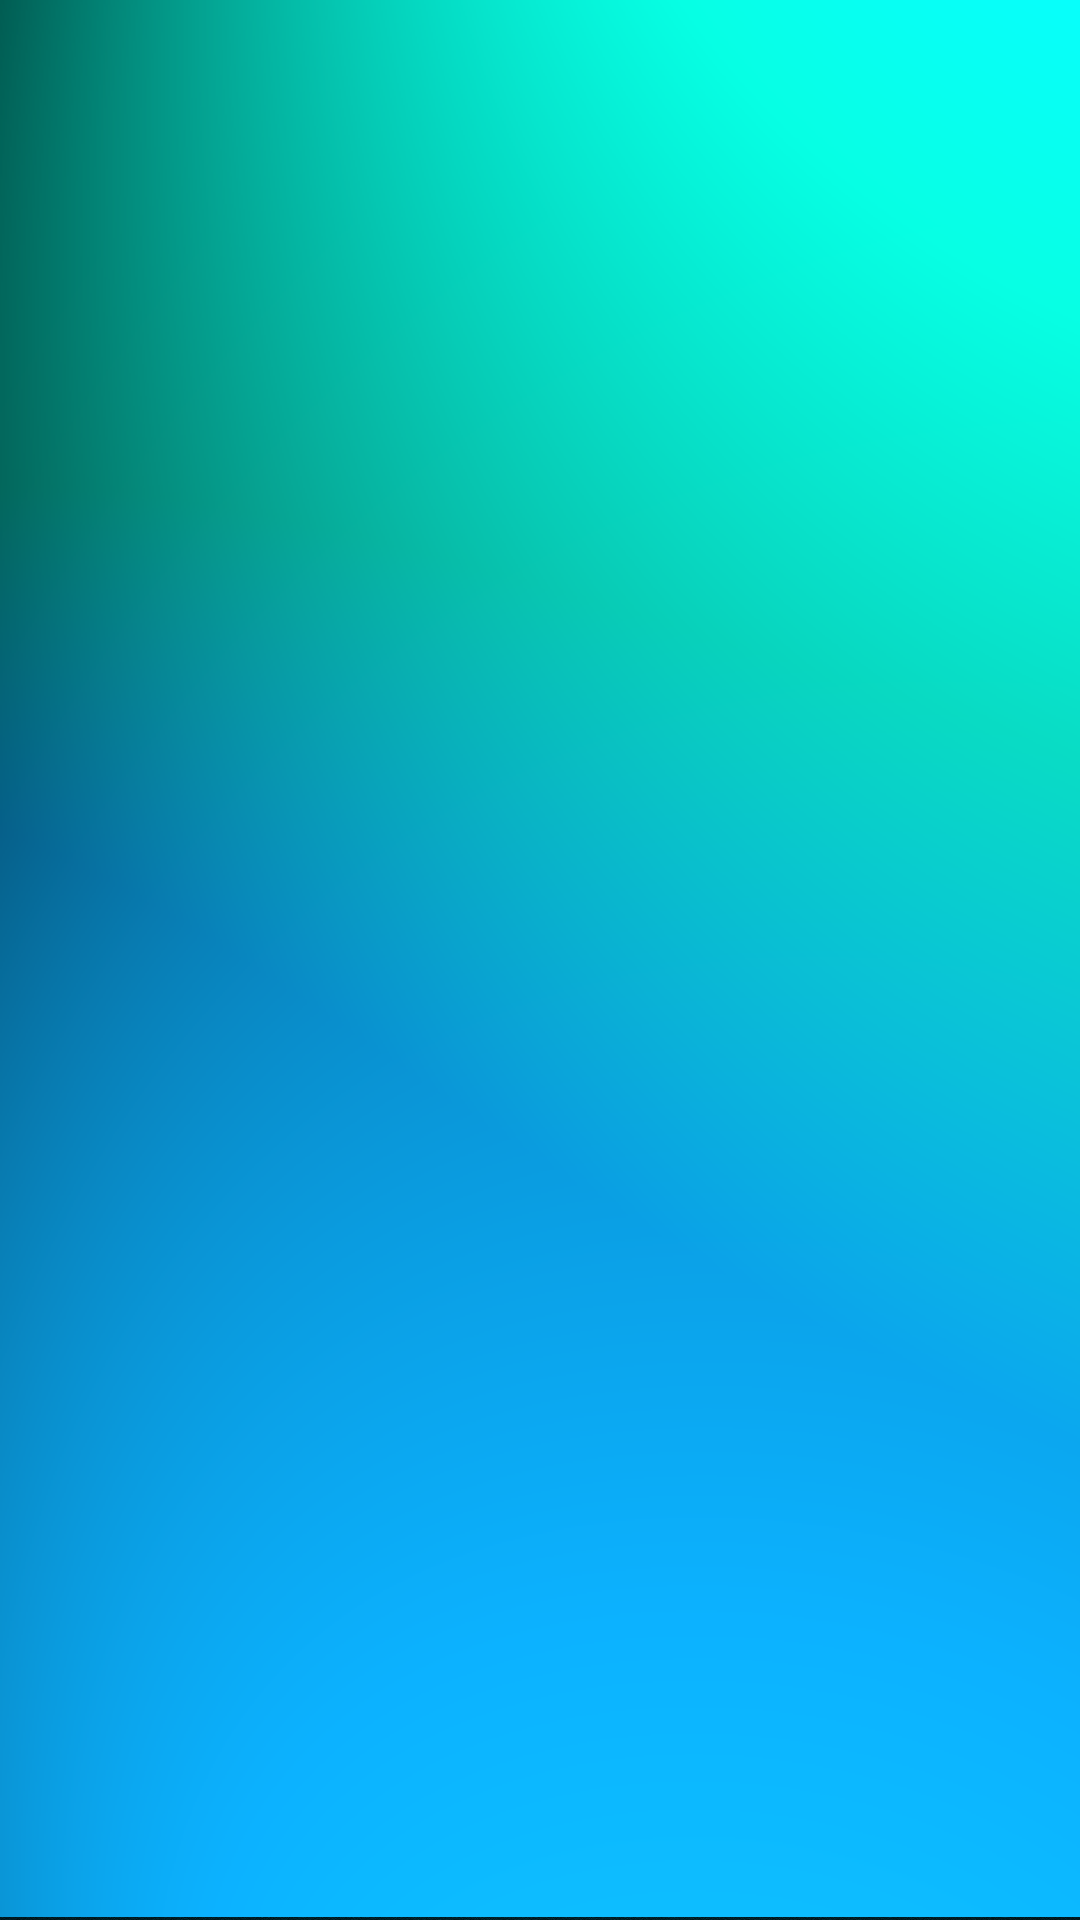 Green Blue Htc One Wallpaper - Fond D Écran Bleu Vert , HD Wallpaper & Backgrounds